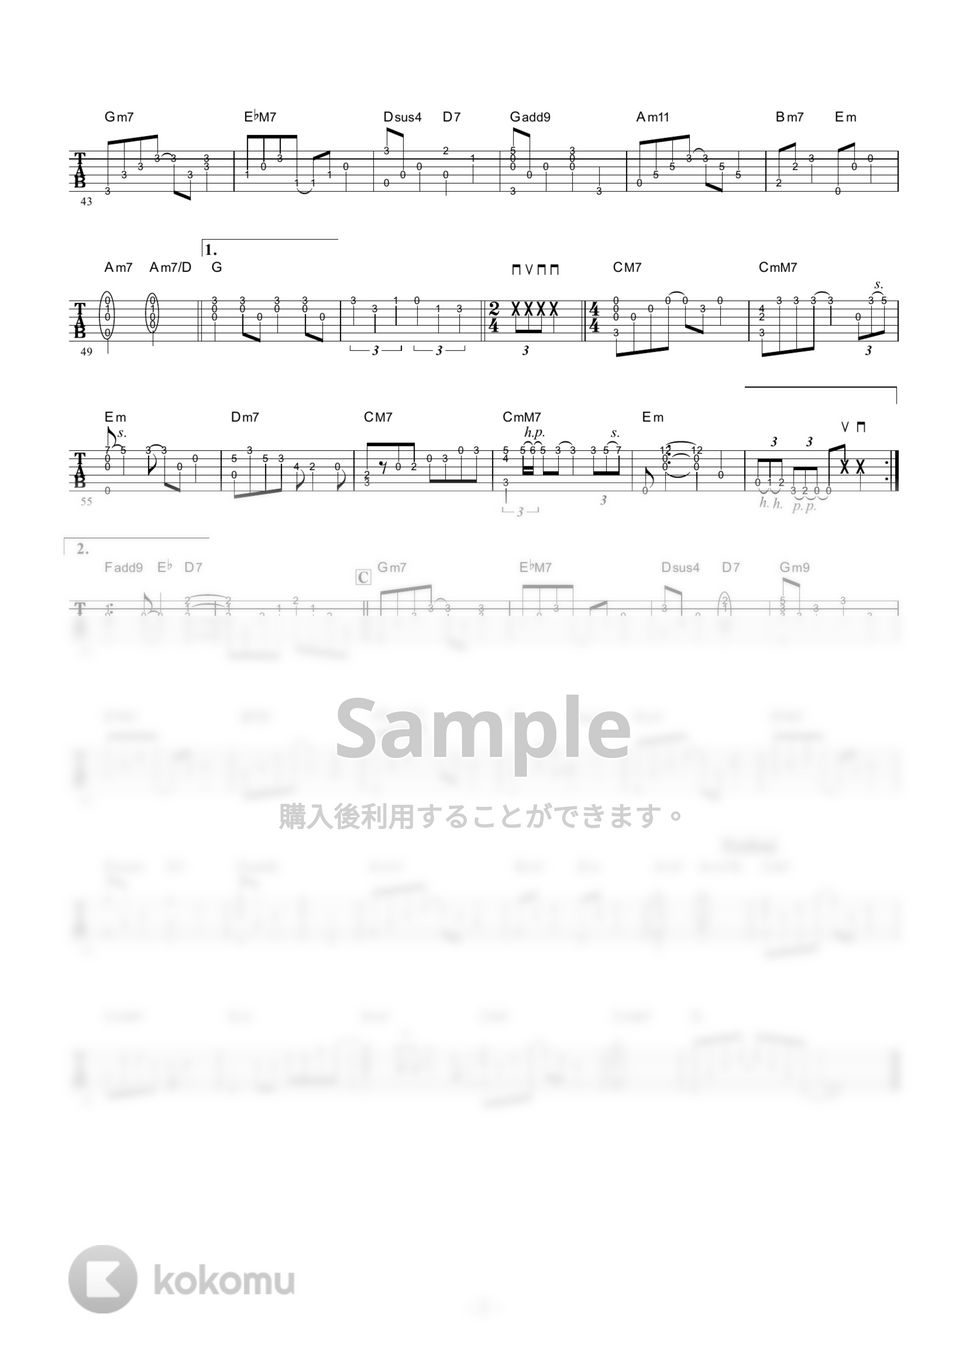 槇原敬之 - 冬がはじまるよ (ギター伴奏/イントロ・間奏ソロギター) by 伴奏屋TAB譜